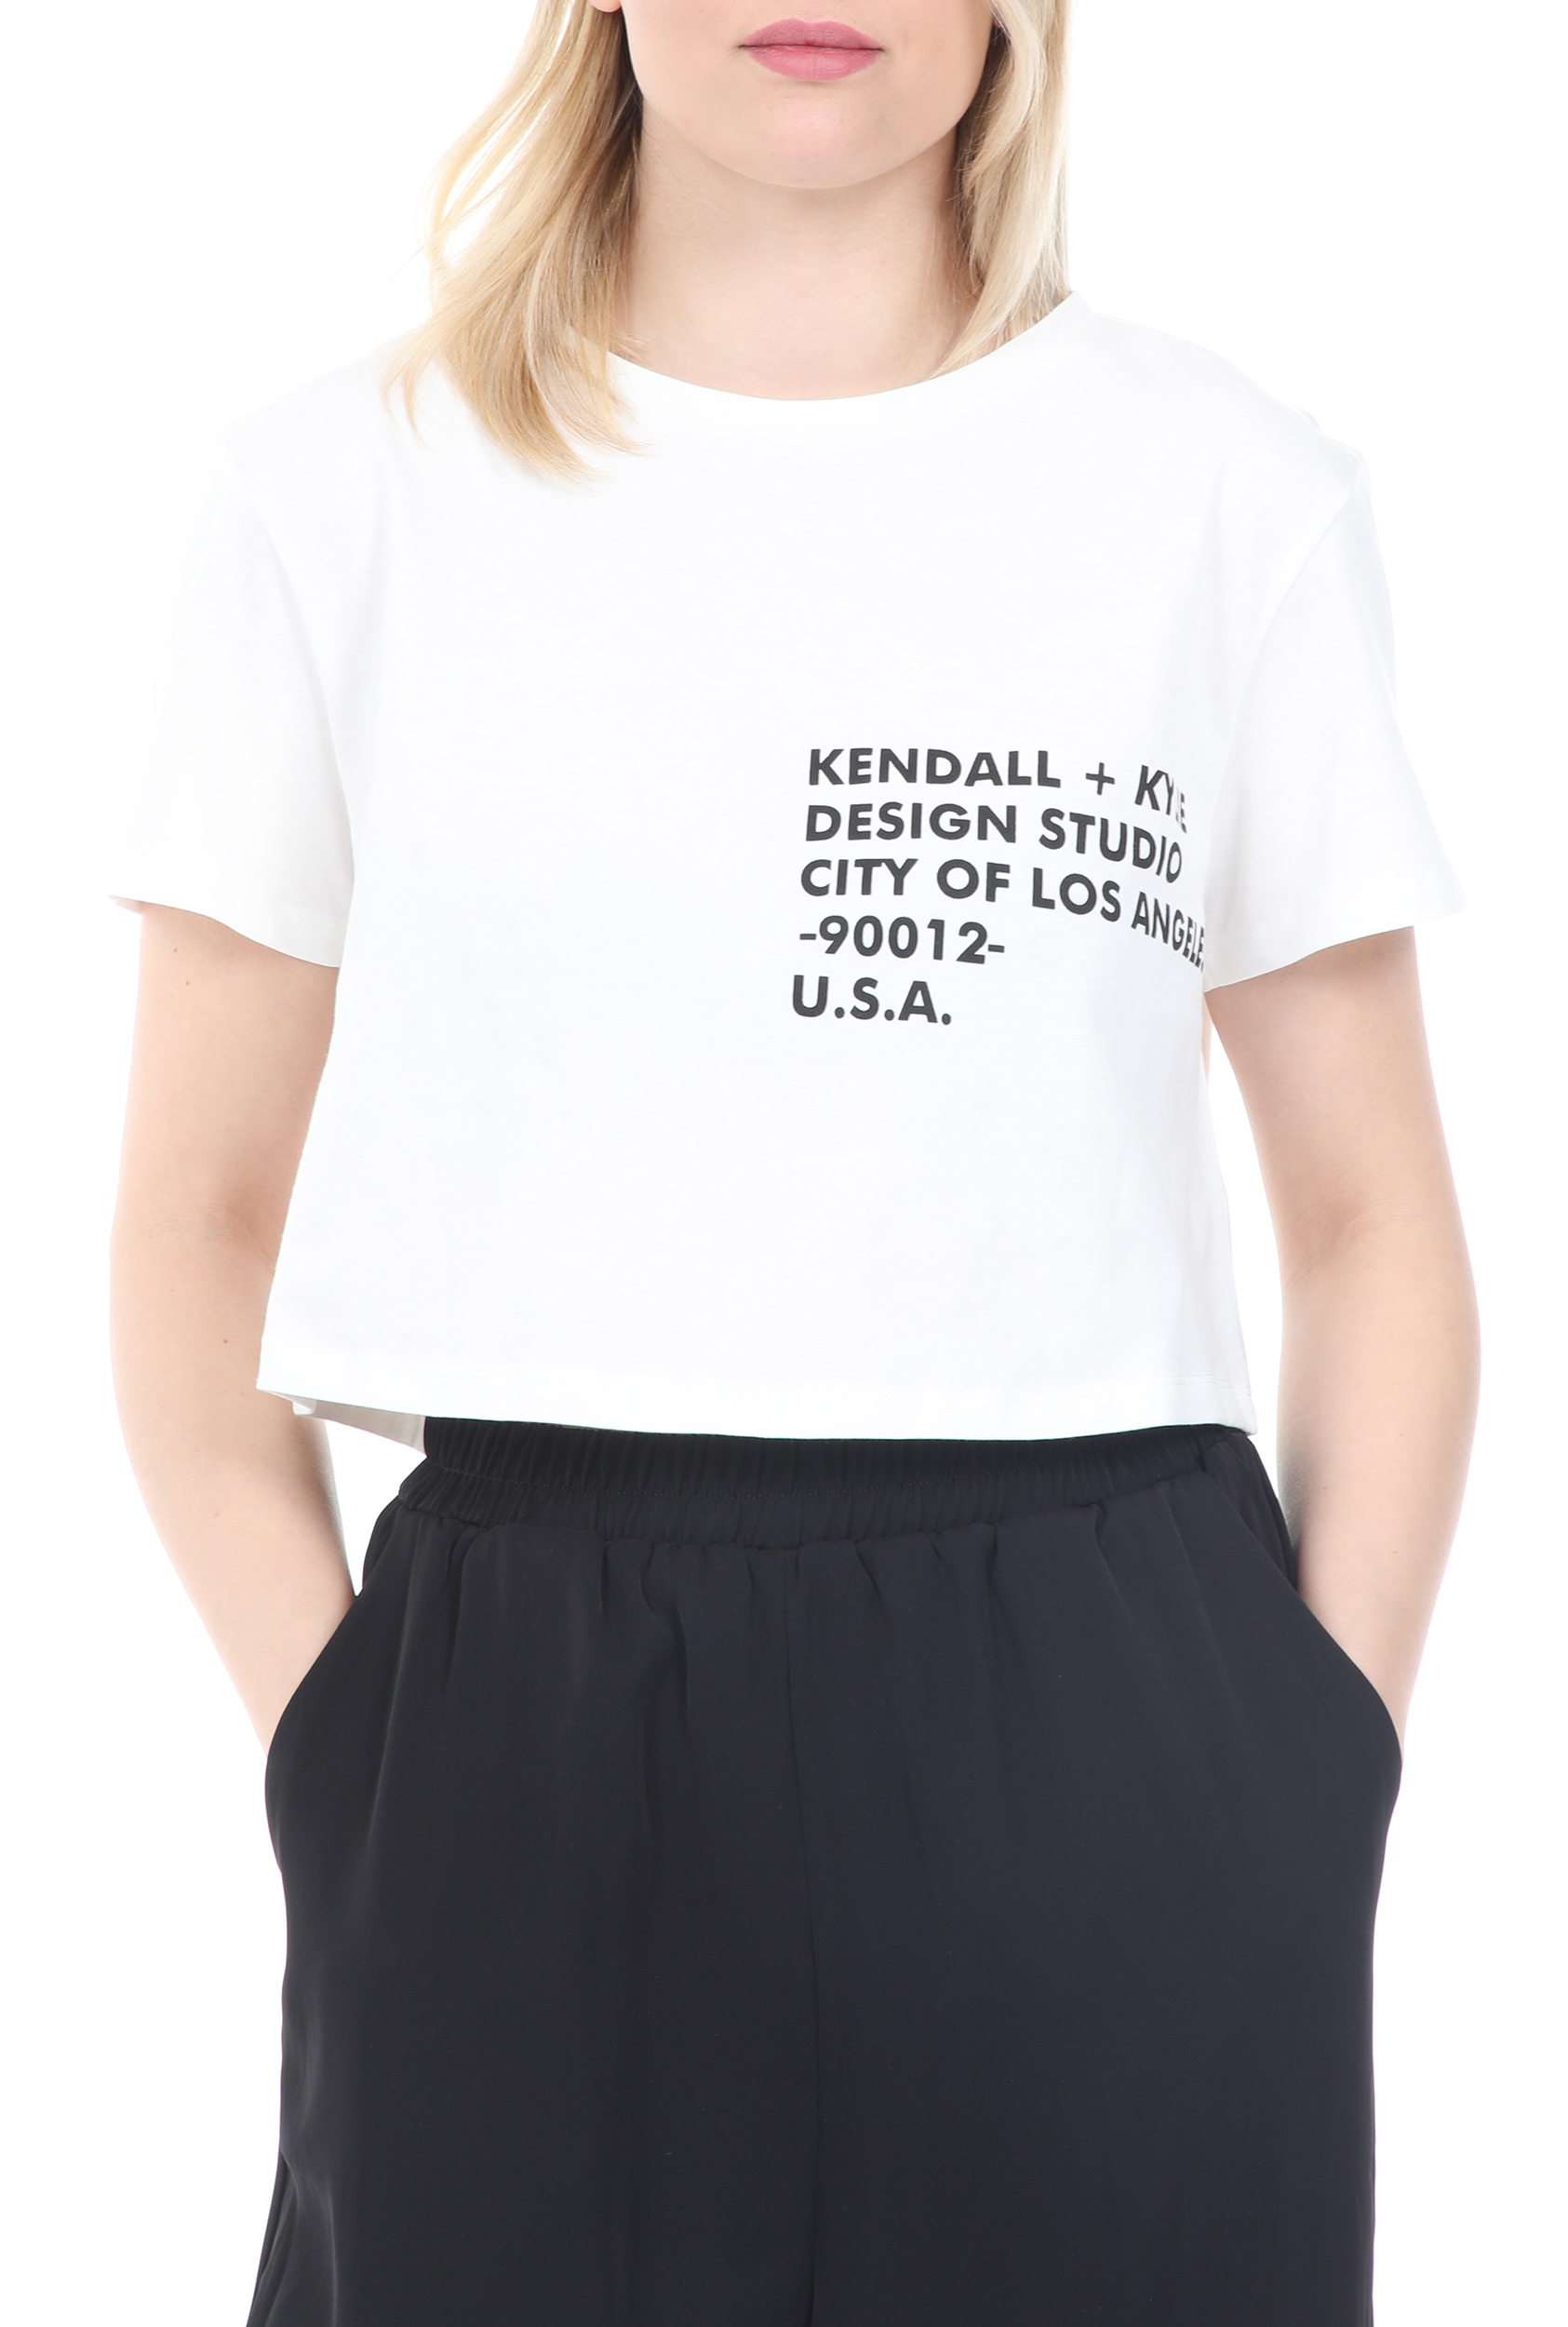 Γυναικεία/Ρούχα/Μπλούζες/Κοντομάνικες KENDALL + KYLIE - Γυναικείο t-shirt KENDALL + KYLIE CROPPED LOGO λευκό